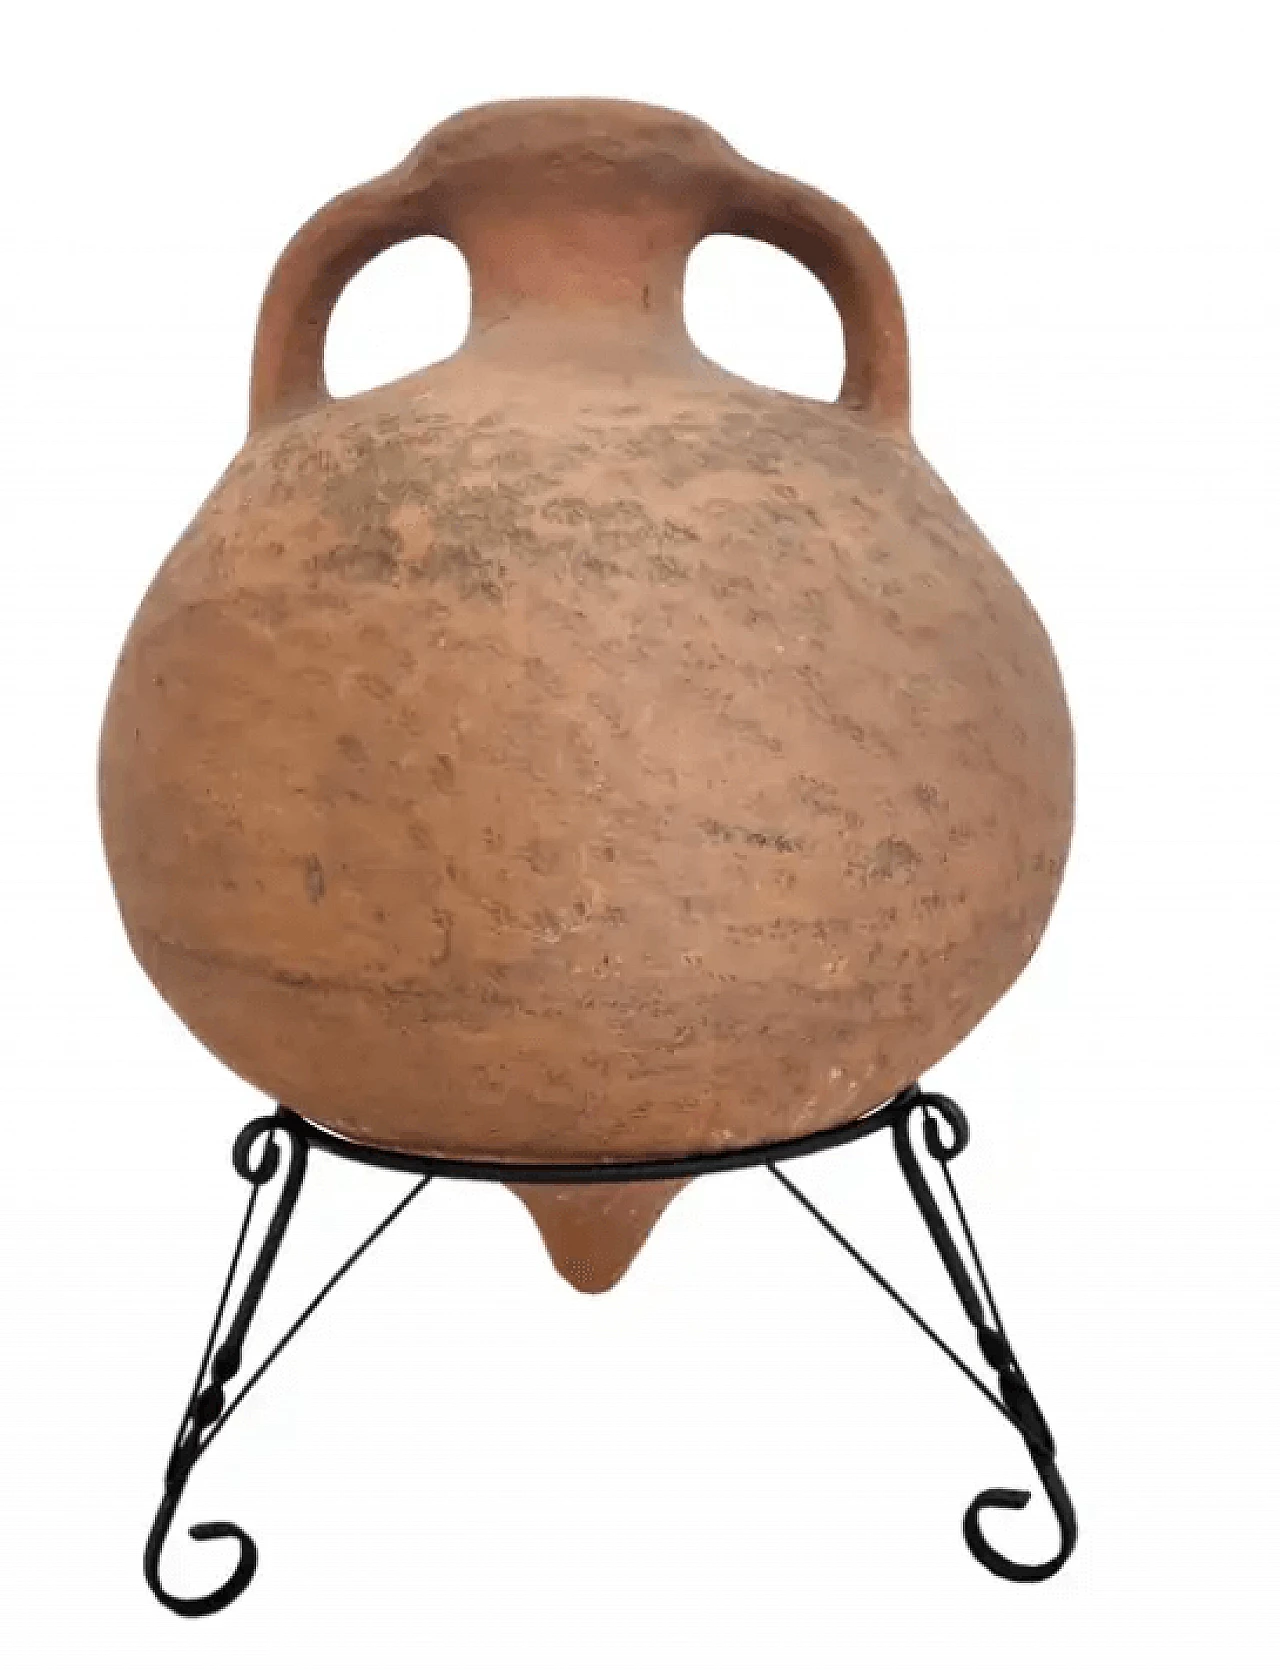 Vaso di terracotta modellato a mano con supporto in ferro verniciato nero, anni '50 1